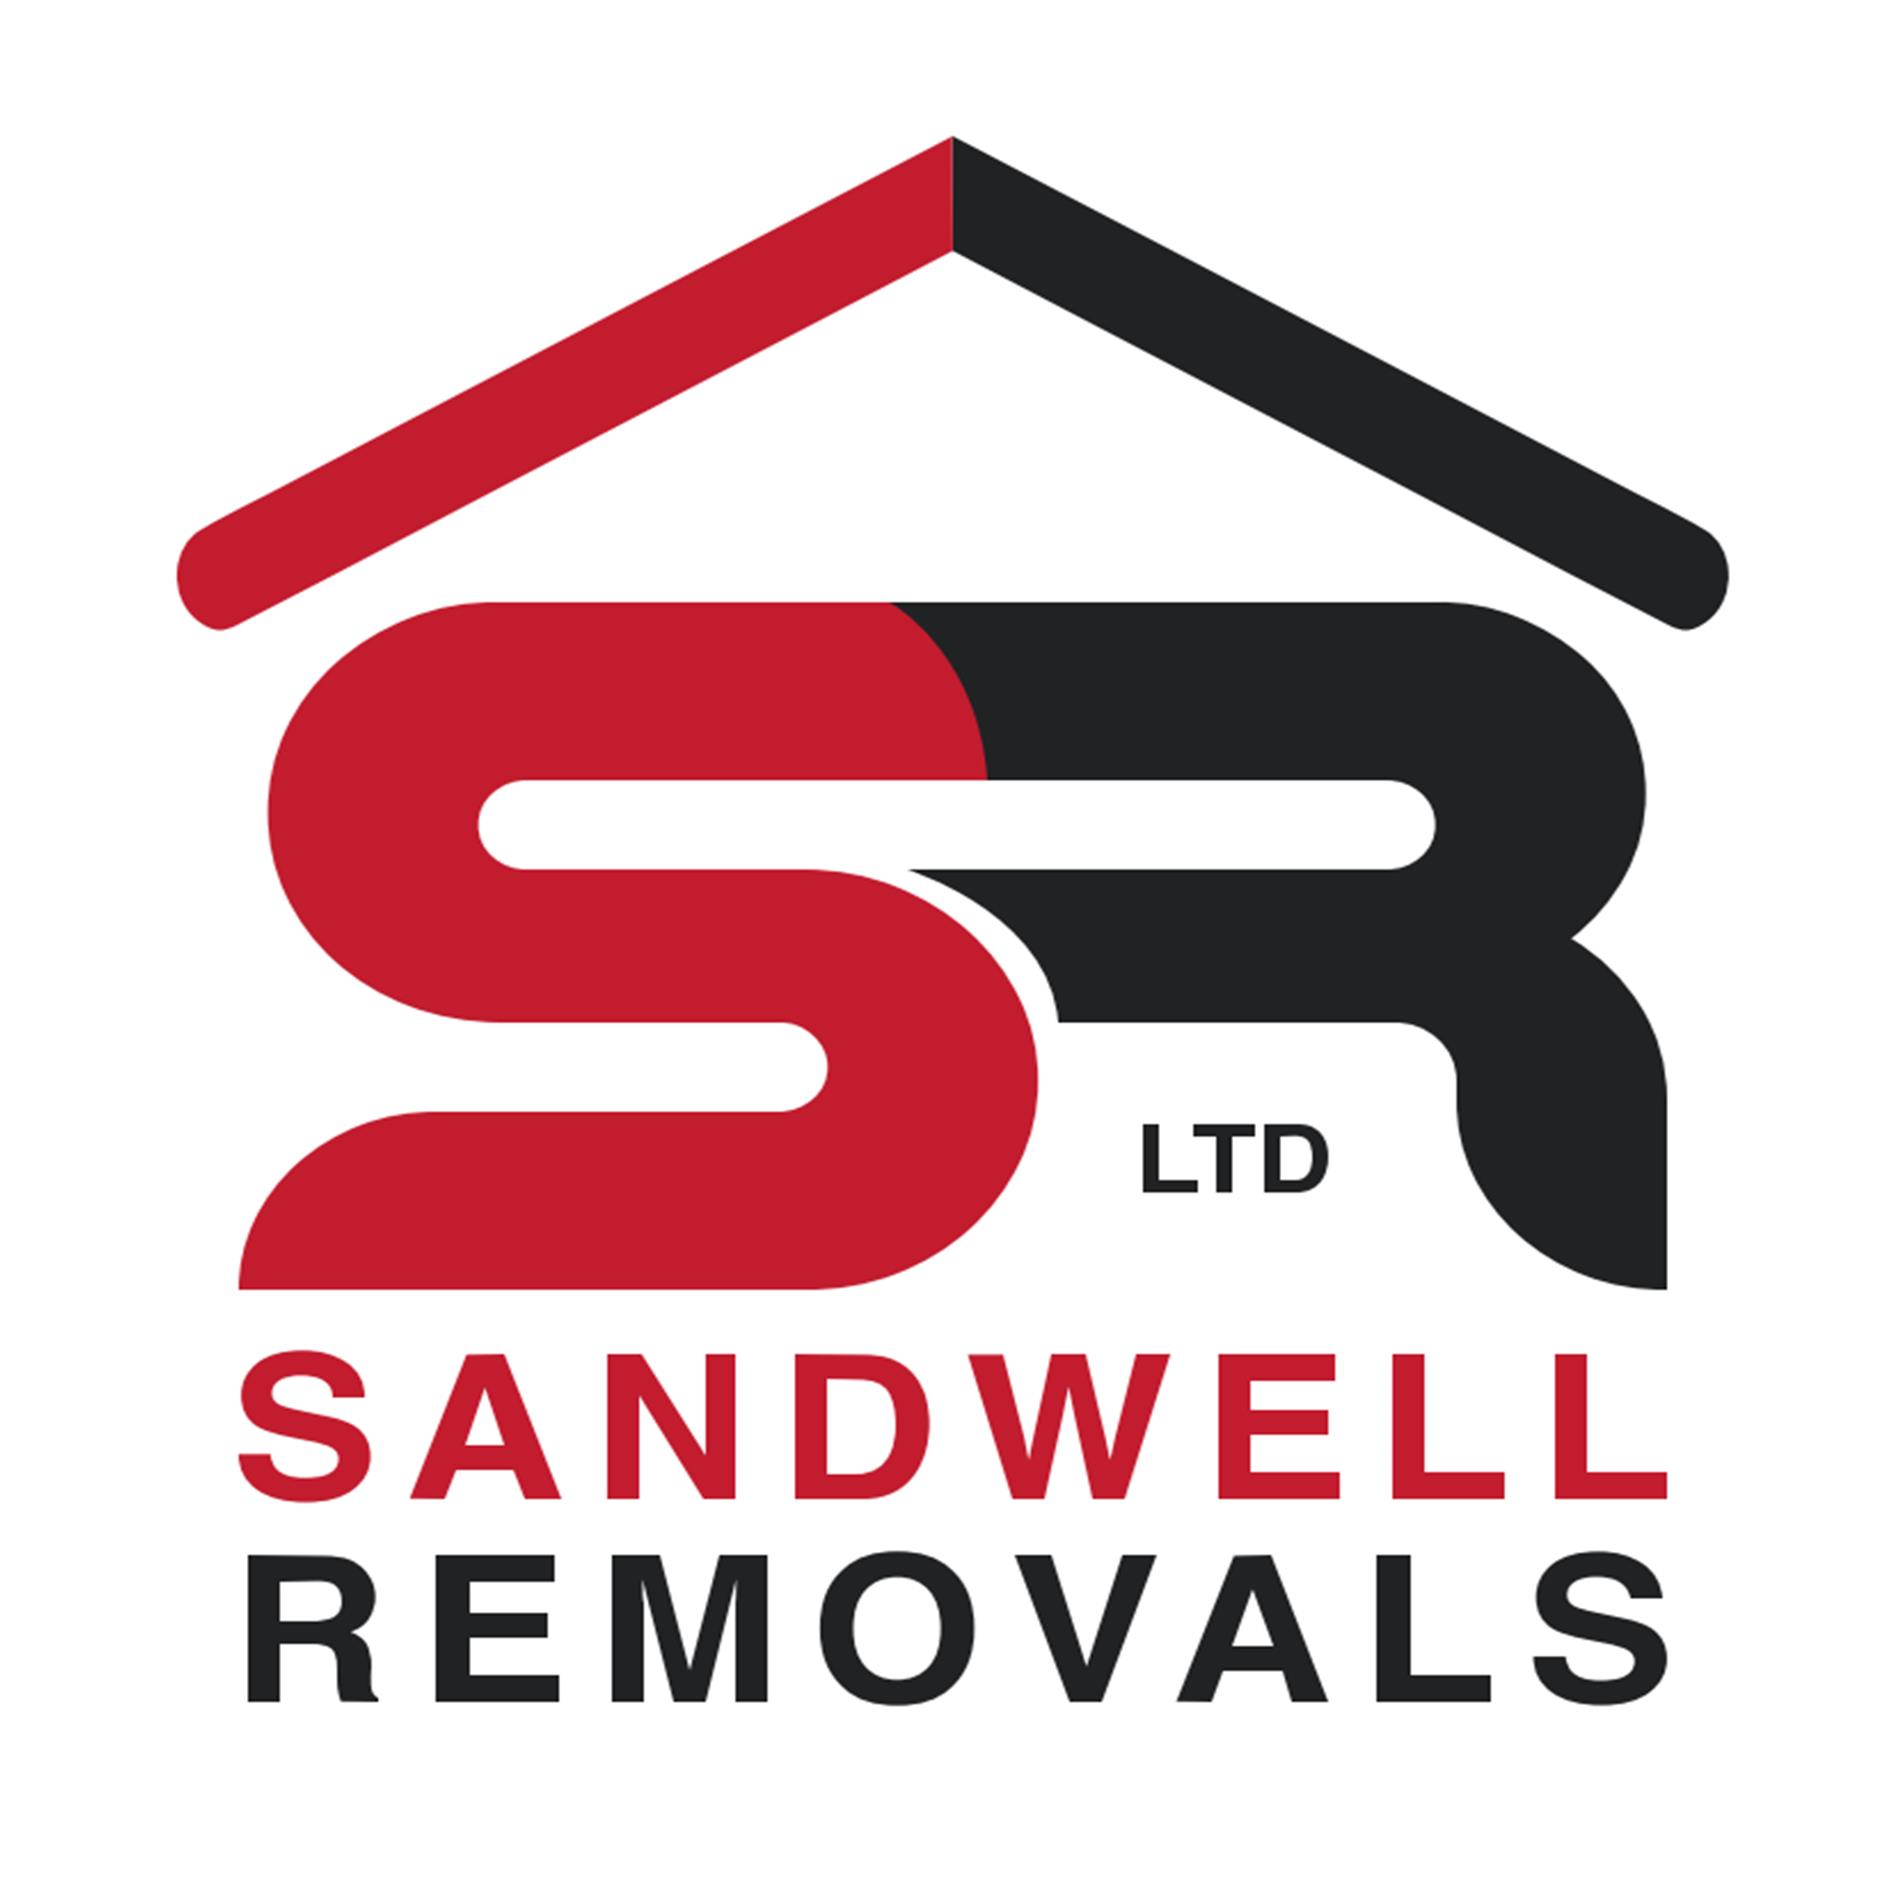 Sandwell-Removals-Ltd